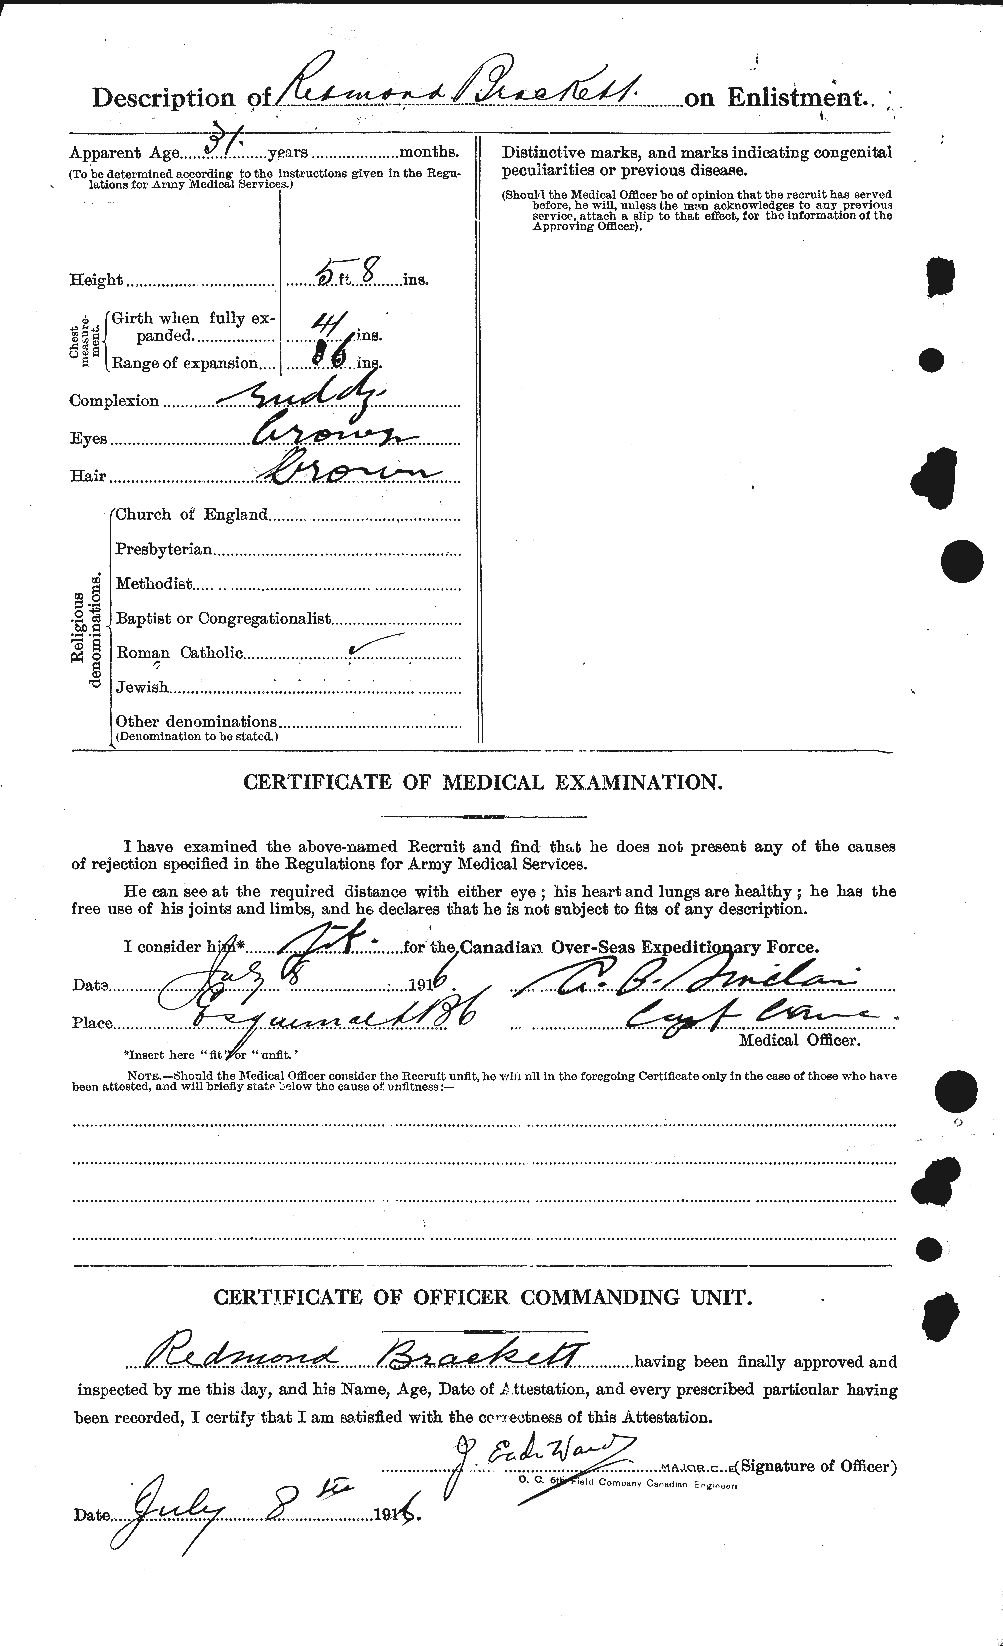 Dossiers du Personnel de la Première Guerre mondiale - CEC 254739b